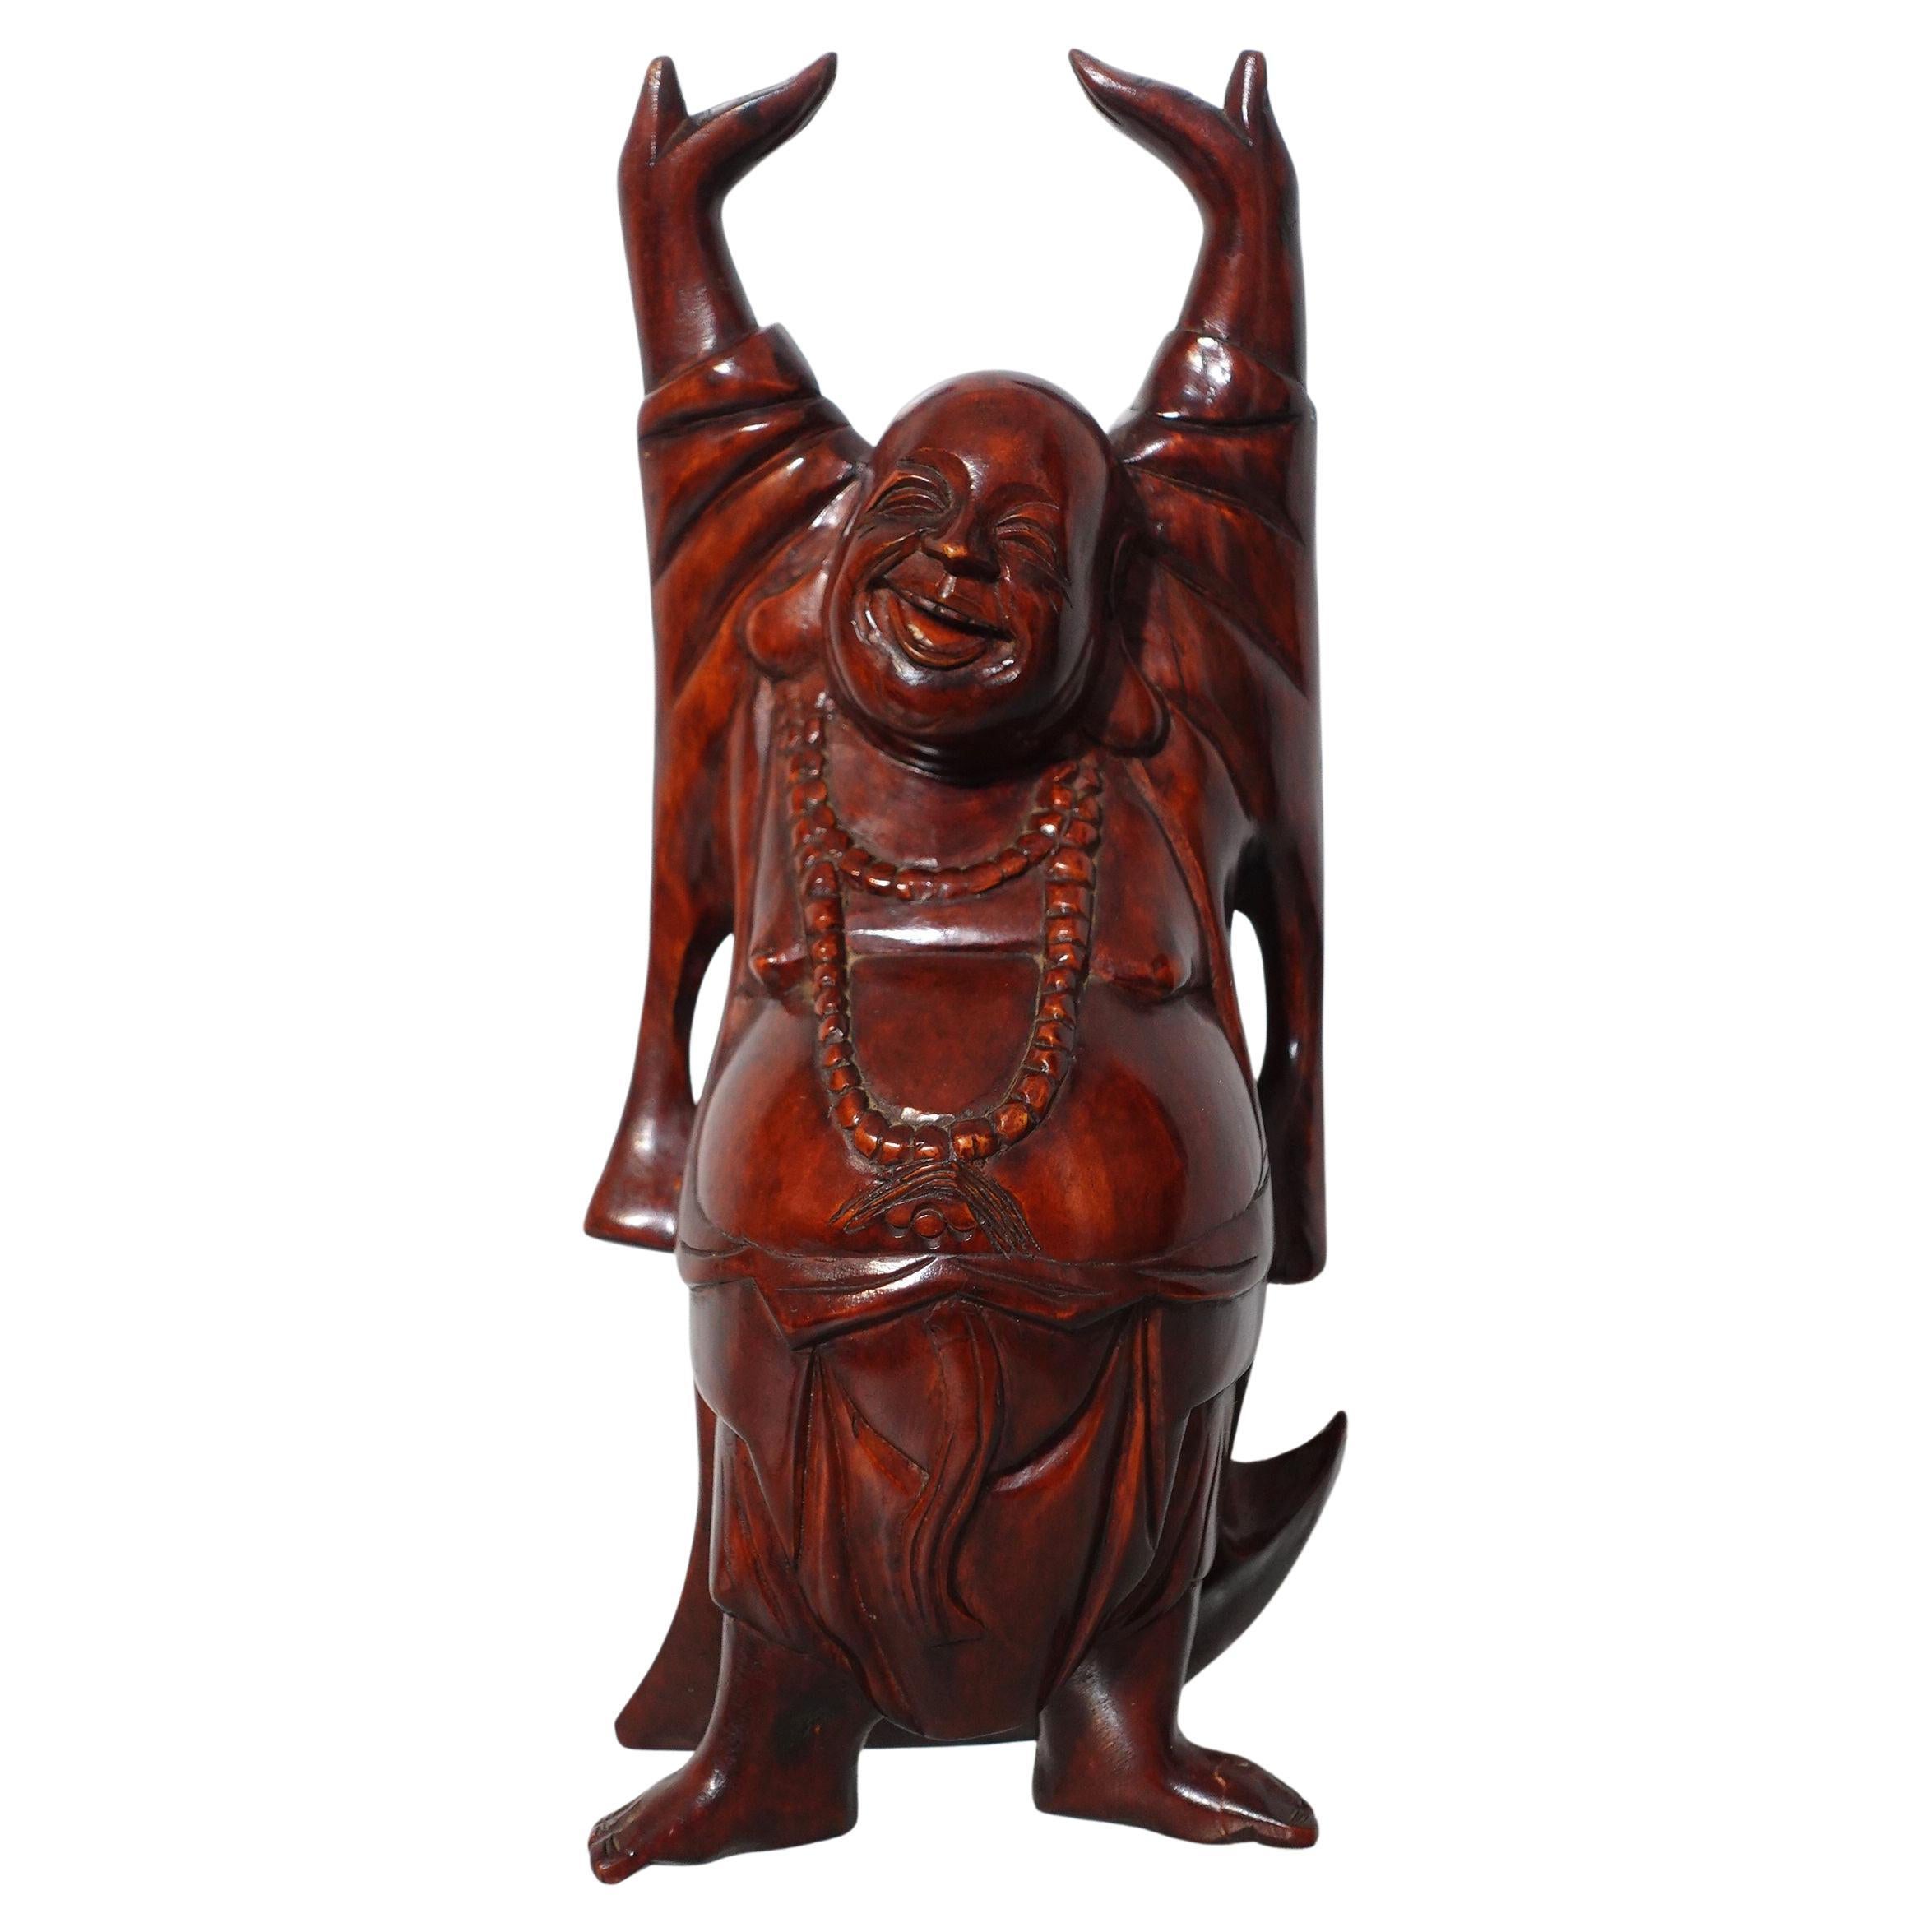 Bouddha heureux en bois sculpté avec les mains levées 